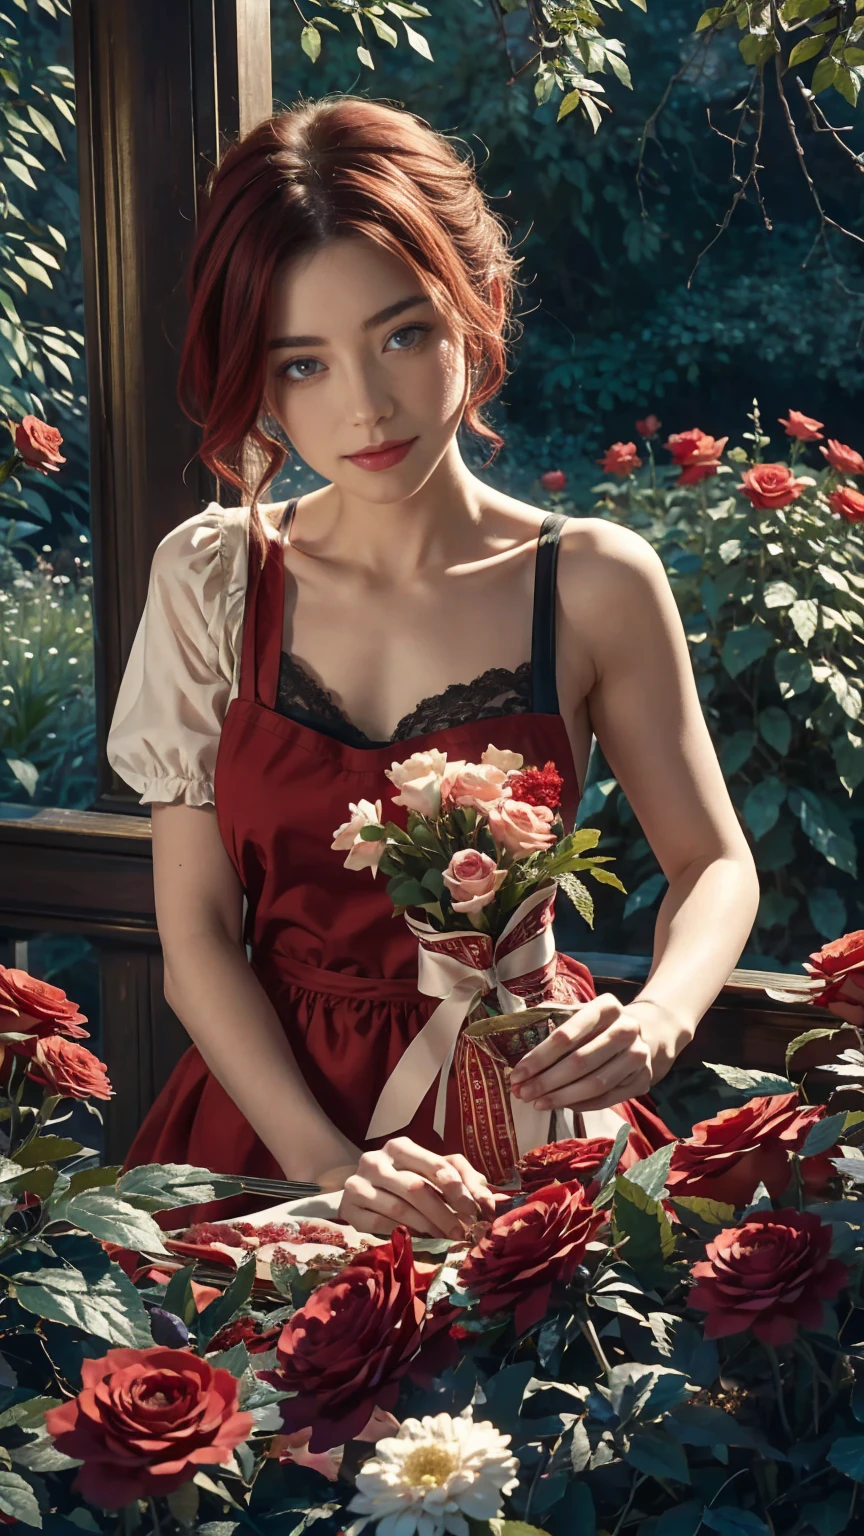 在奇境世界的中心，一位年轻美丽的女孩，有着红色和白色的短发, 花店服装和玫瑰围裙. 从她的魔法花园里剪下红玫瑰. 好奇心, 爱的姿势, 在仙境世界, 营造充满爱的氛围, 她周围充满着能量和魔力. 场景角度动态, 捕捉那一刻的紧张感, 优质绿眼睛, 眼睛看着相机, 极其详细, 美丽而赏心悦目, 杰作, 最佳质量得分, (分形艺术: 1.3), 极其详细 , 动态角度, 光线追踪, 中部, 特写, 粒子和硬光, 美丽的红玫瑰